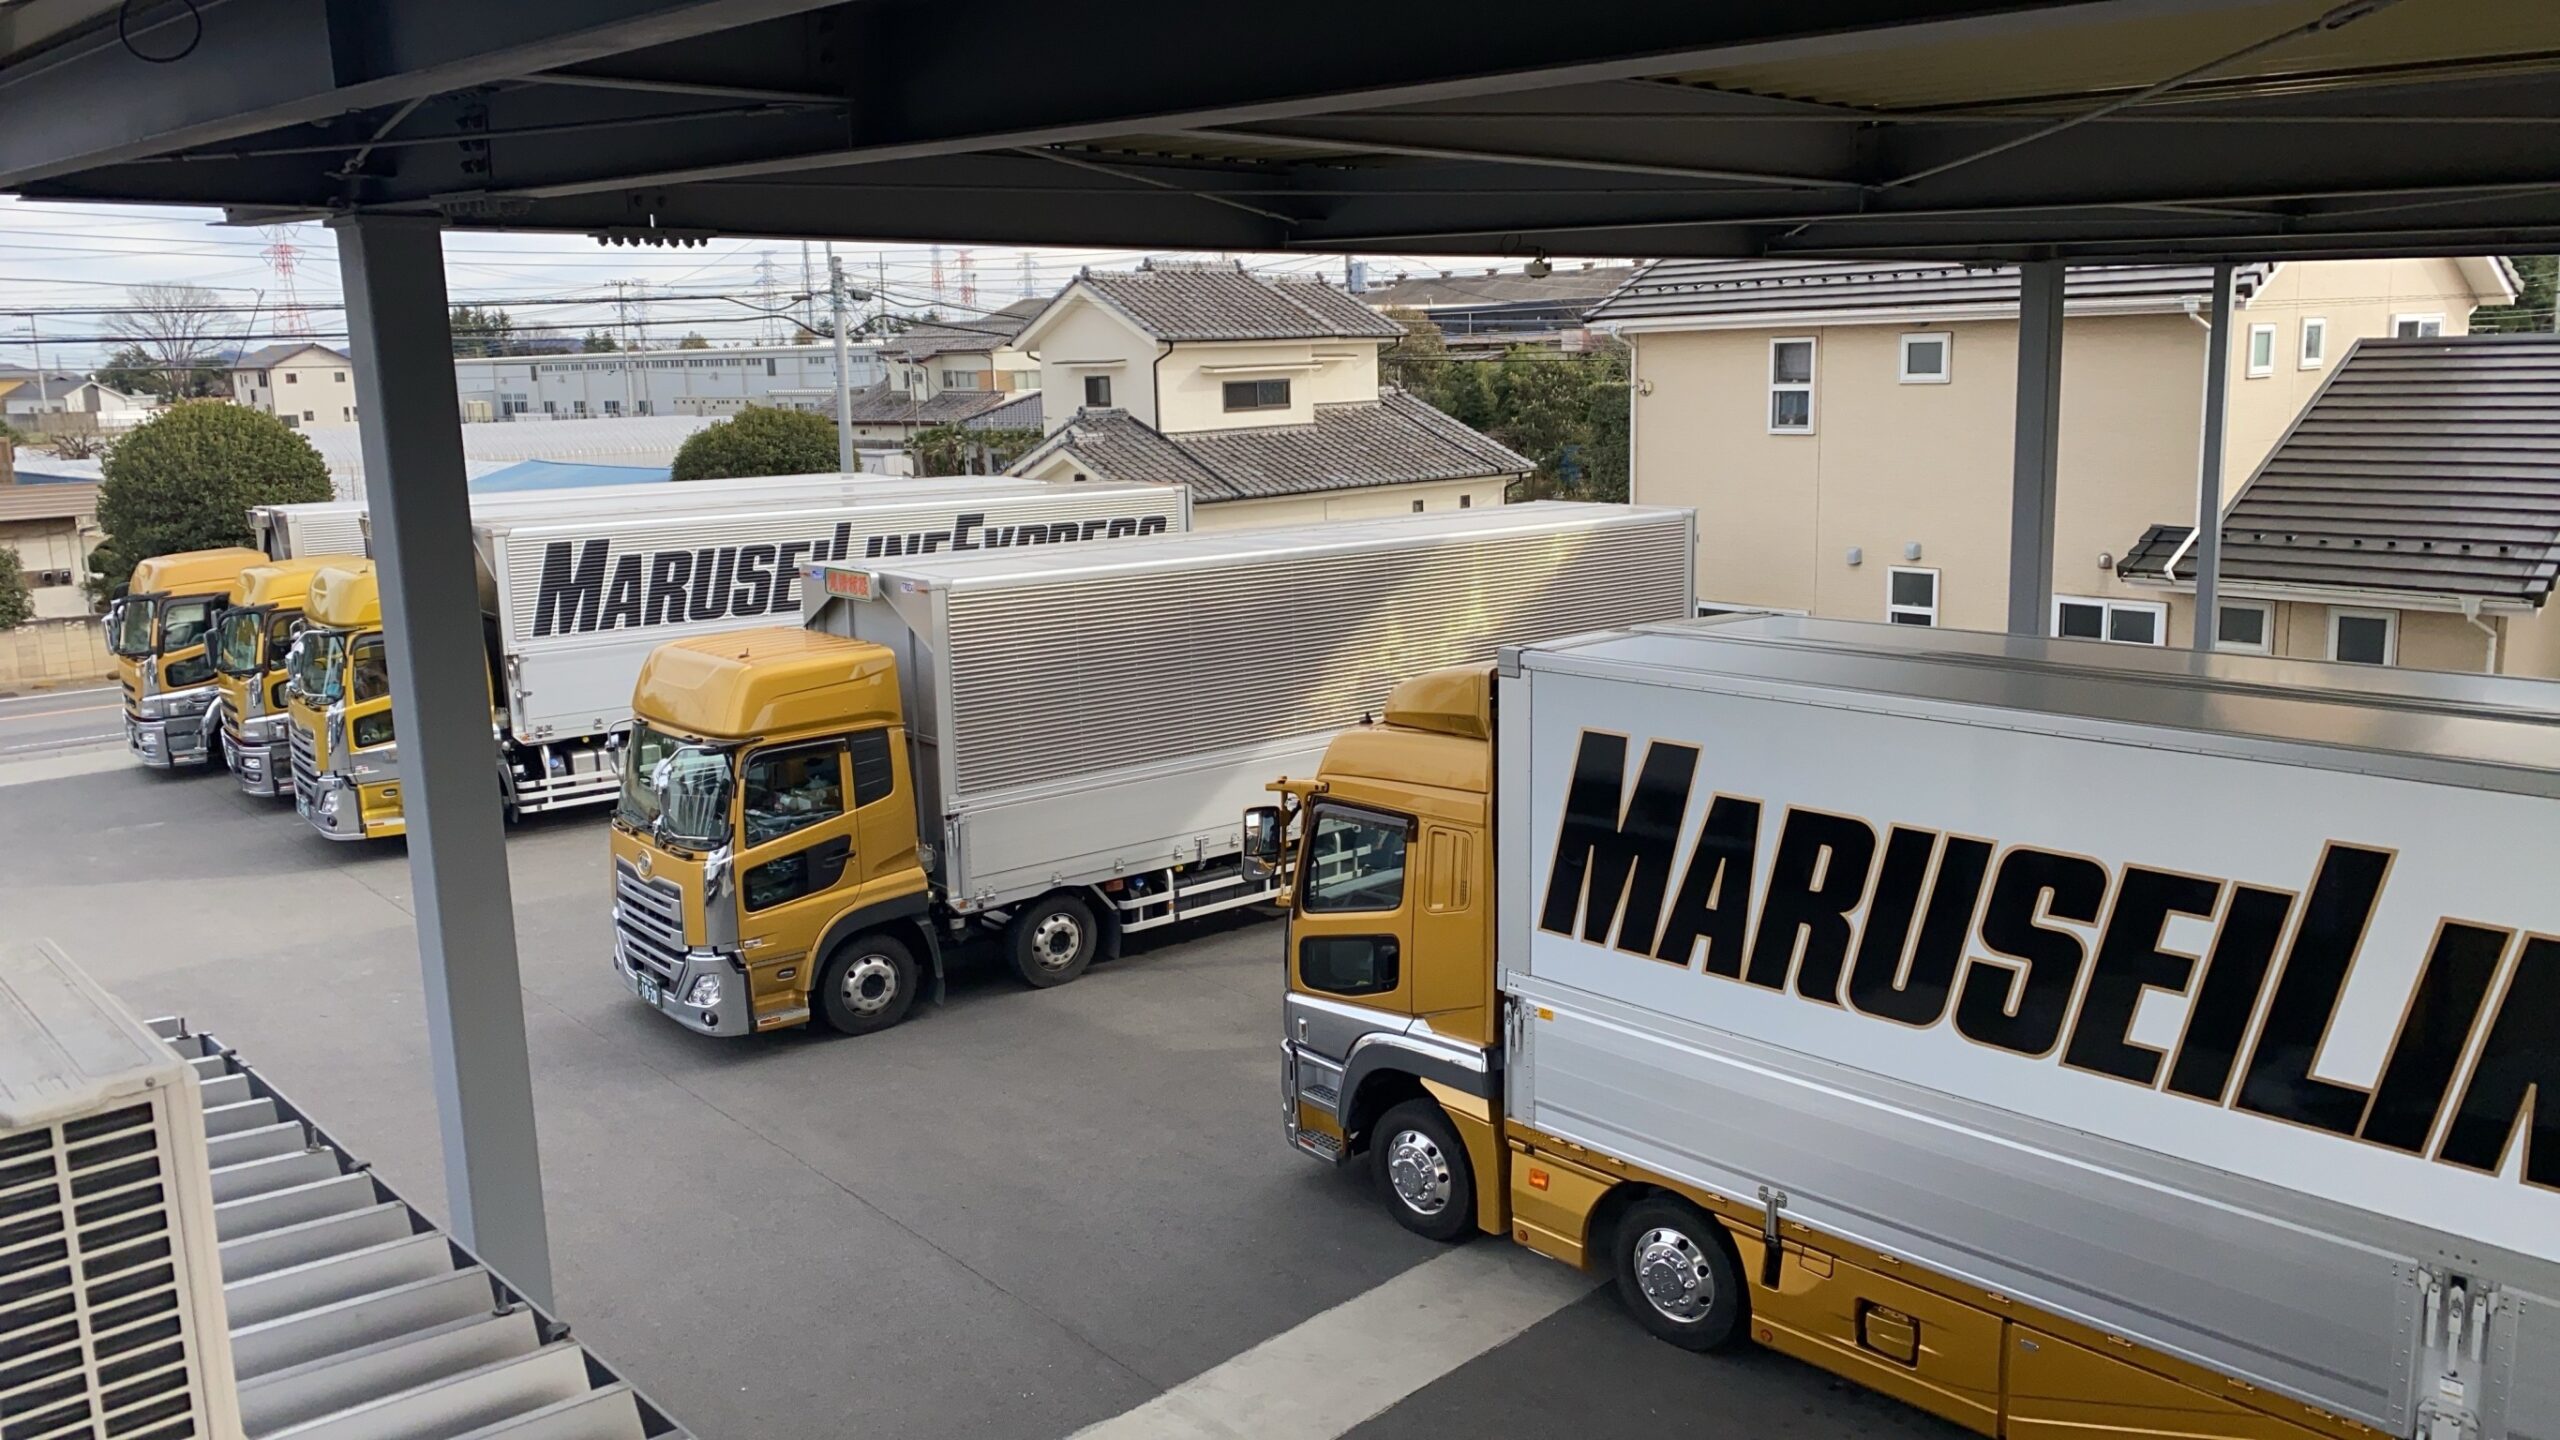 群馬県太田市の株式会社丸清荷役は、一般貨物・食品輸送などを手掛けている運送会社です。